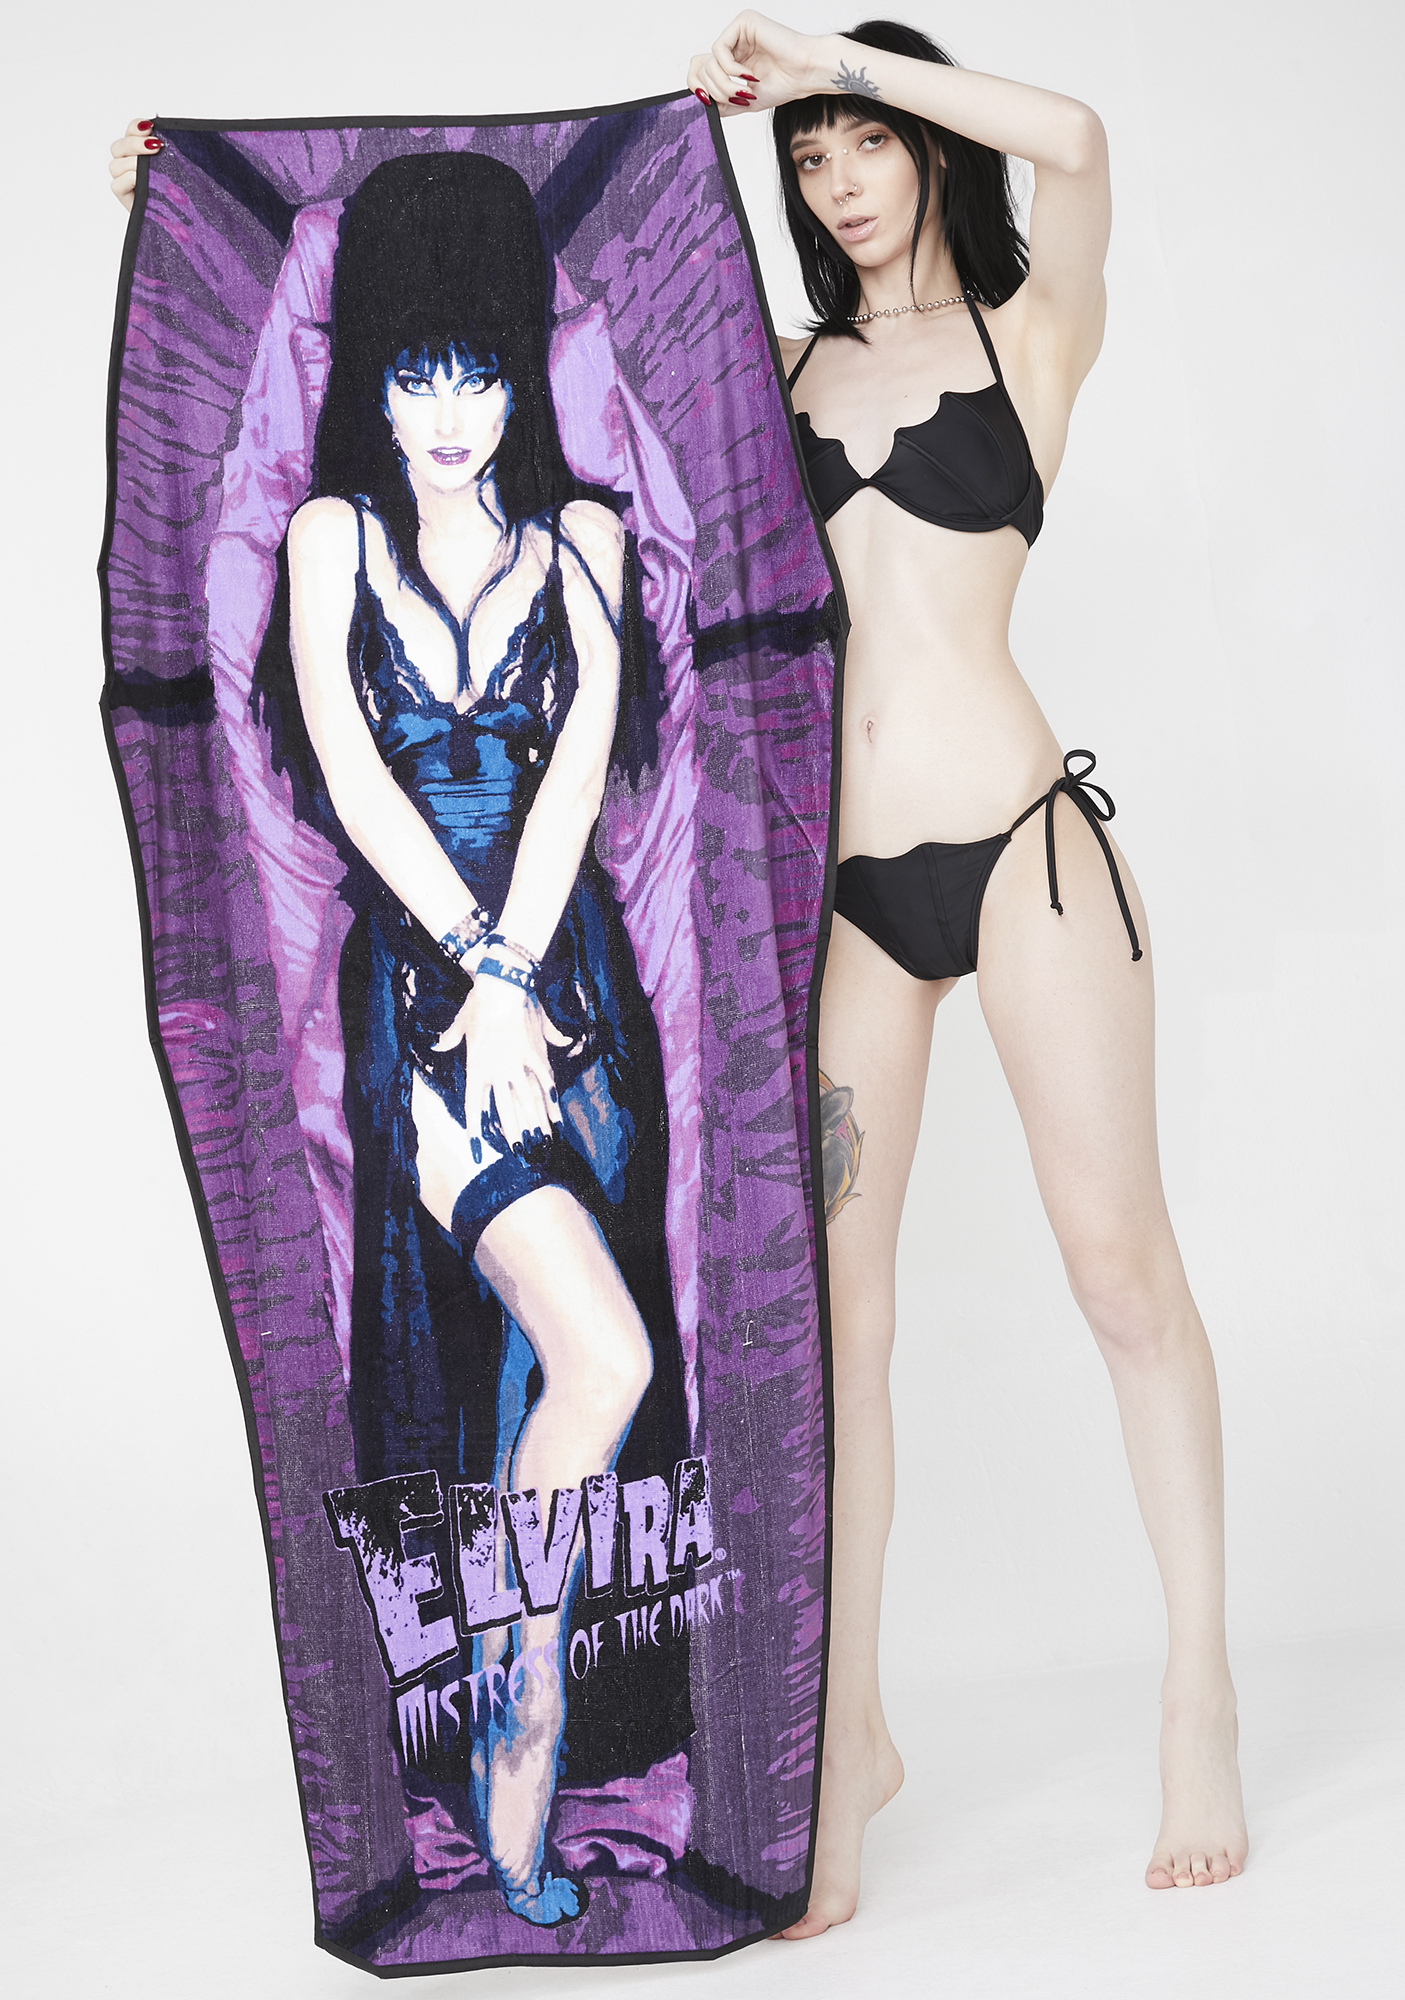 Kreepsville 666 Official Elvira Coffin Shaped Beach Towel Mistress of the Dark